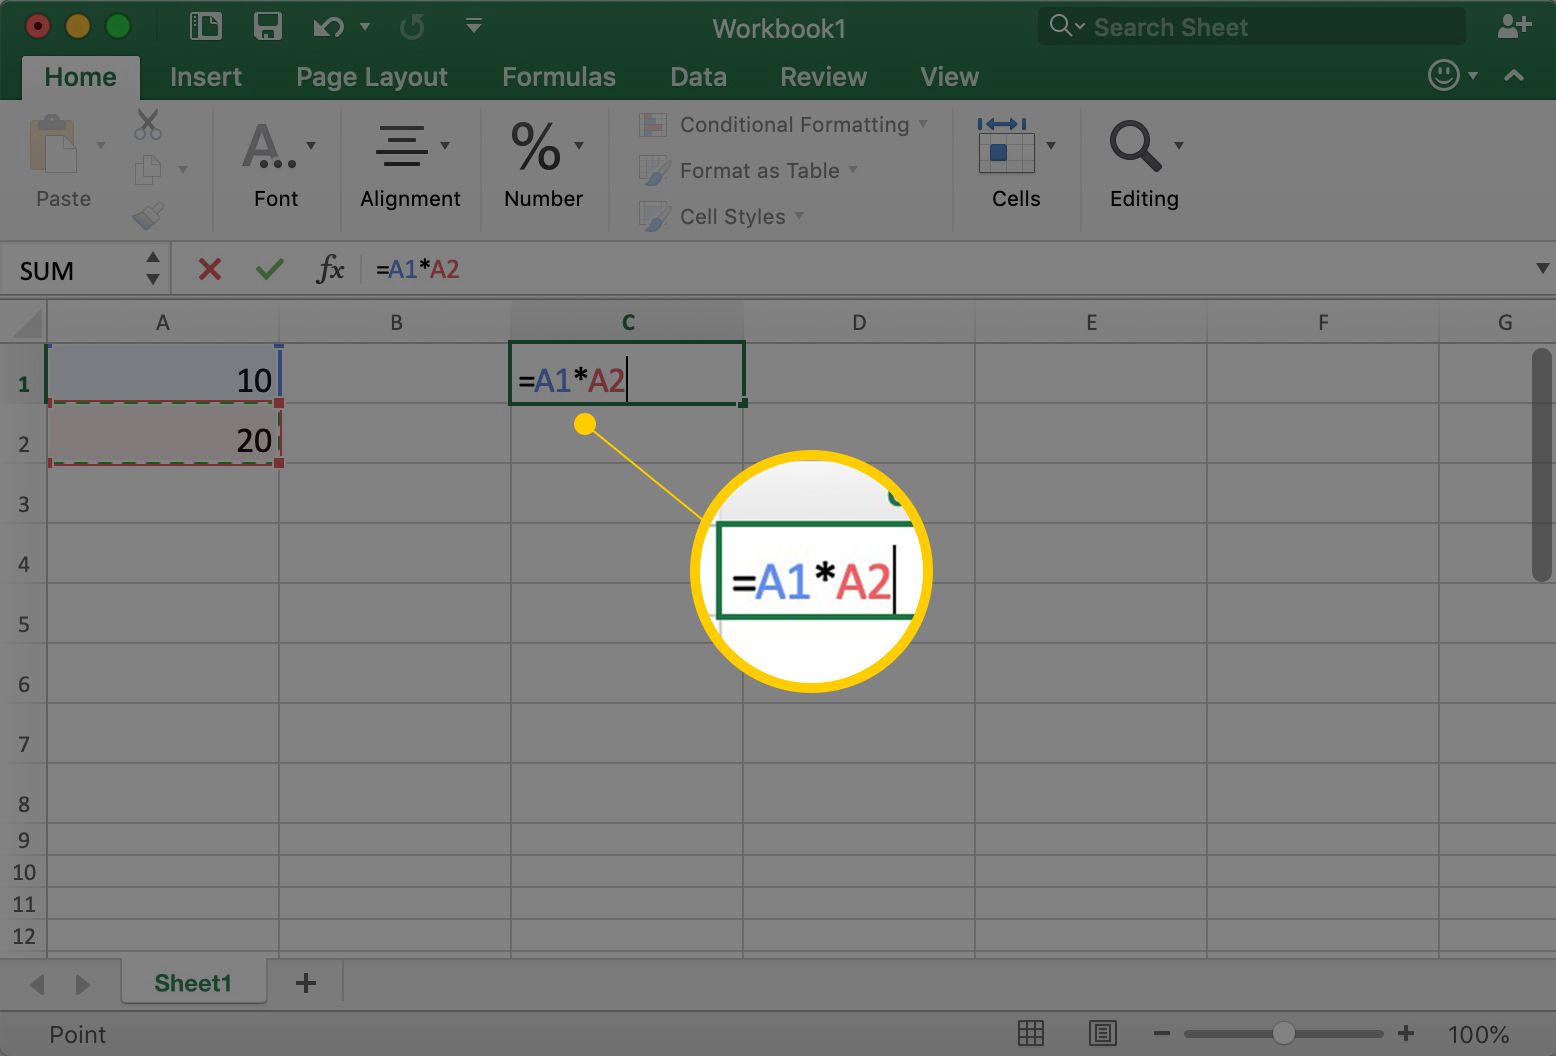 Excel toont cel C1 met =A1*A2 erin